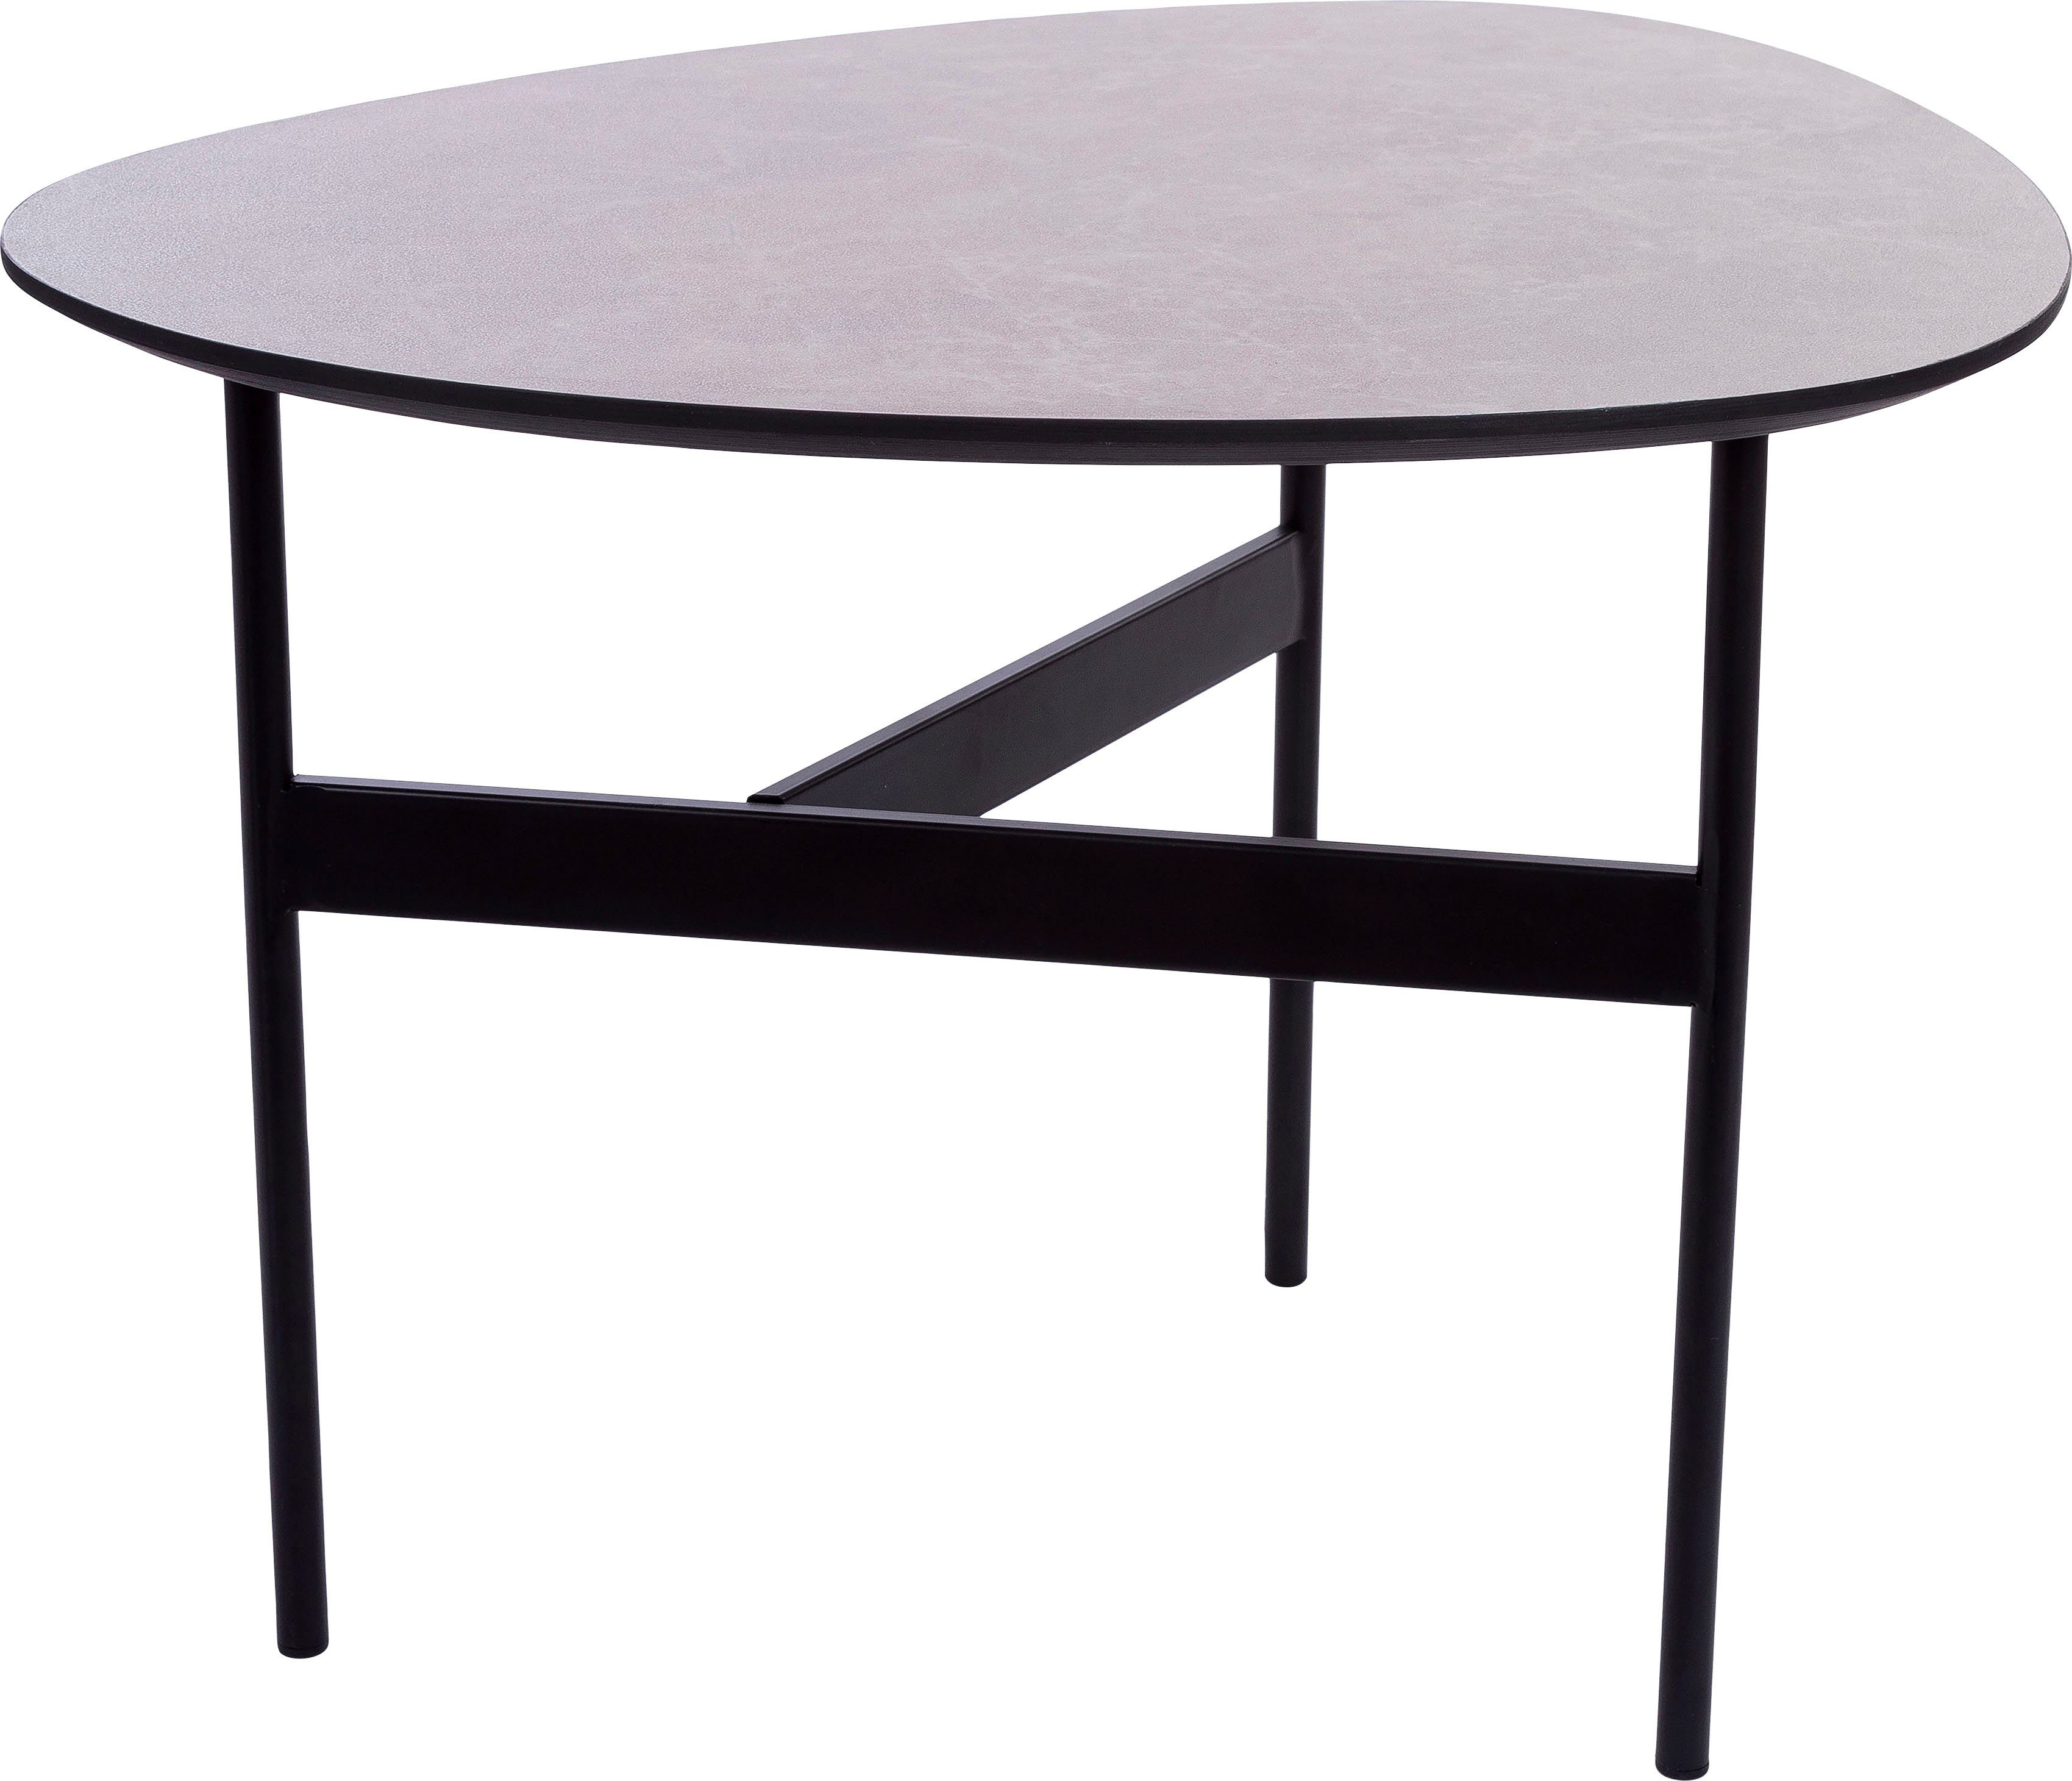 Home affaire Beistelltisch, Tischplatte, Oval, 3 lackierter Gestell grau Bein Beistelltisch